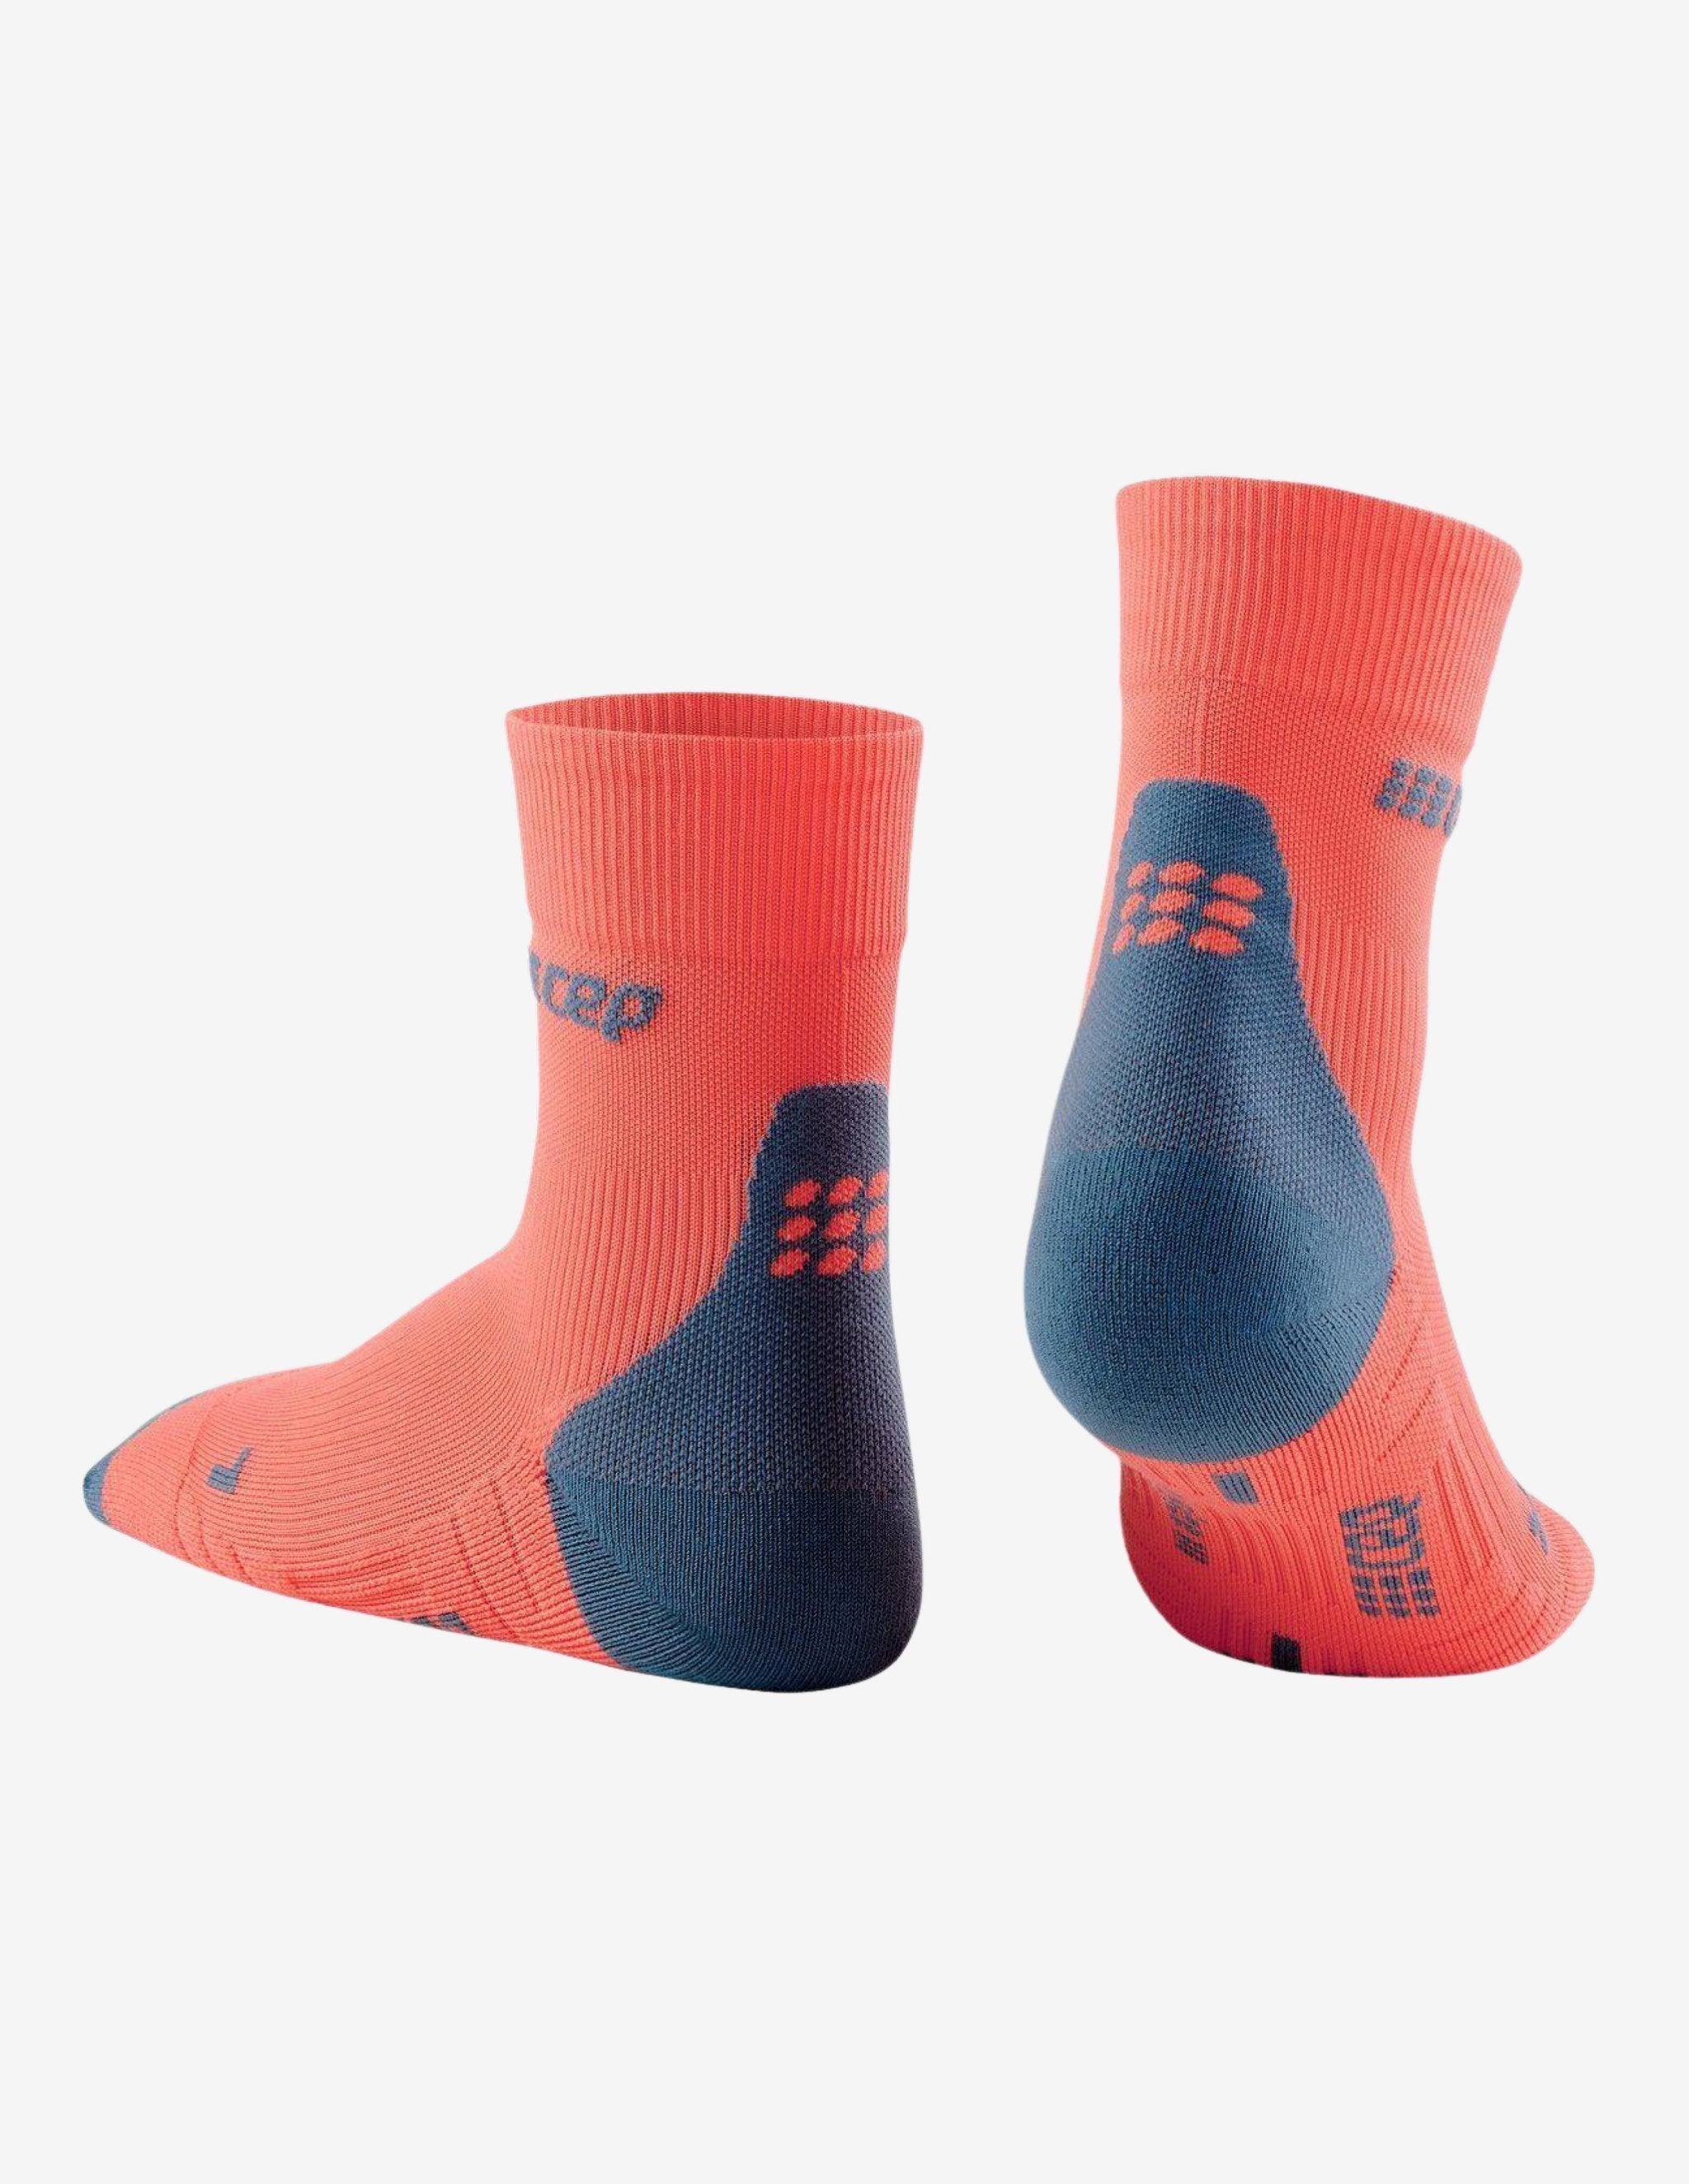 CEP Socks Short Cut 3.0 Coral/Grey-Socks-CEP Compression-Guru Muscle